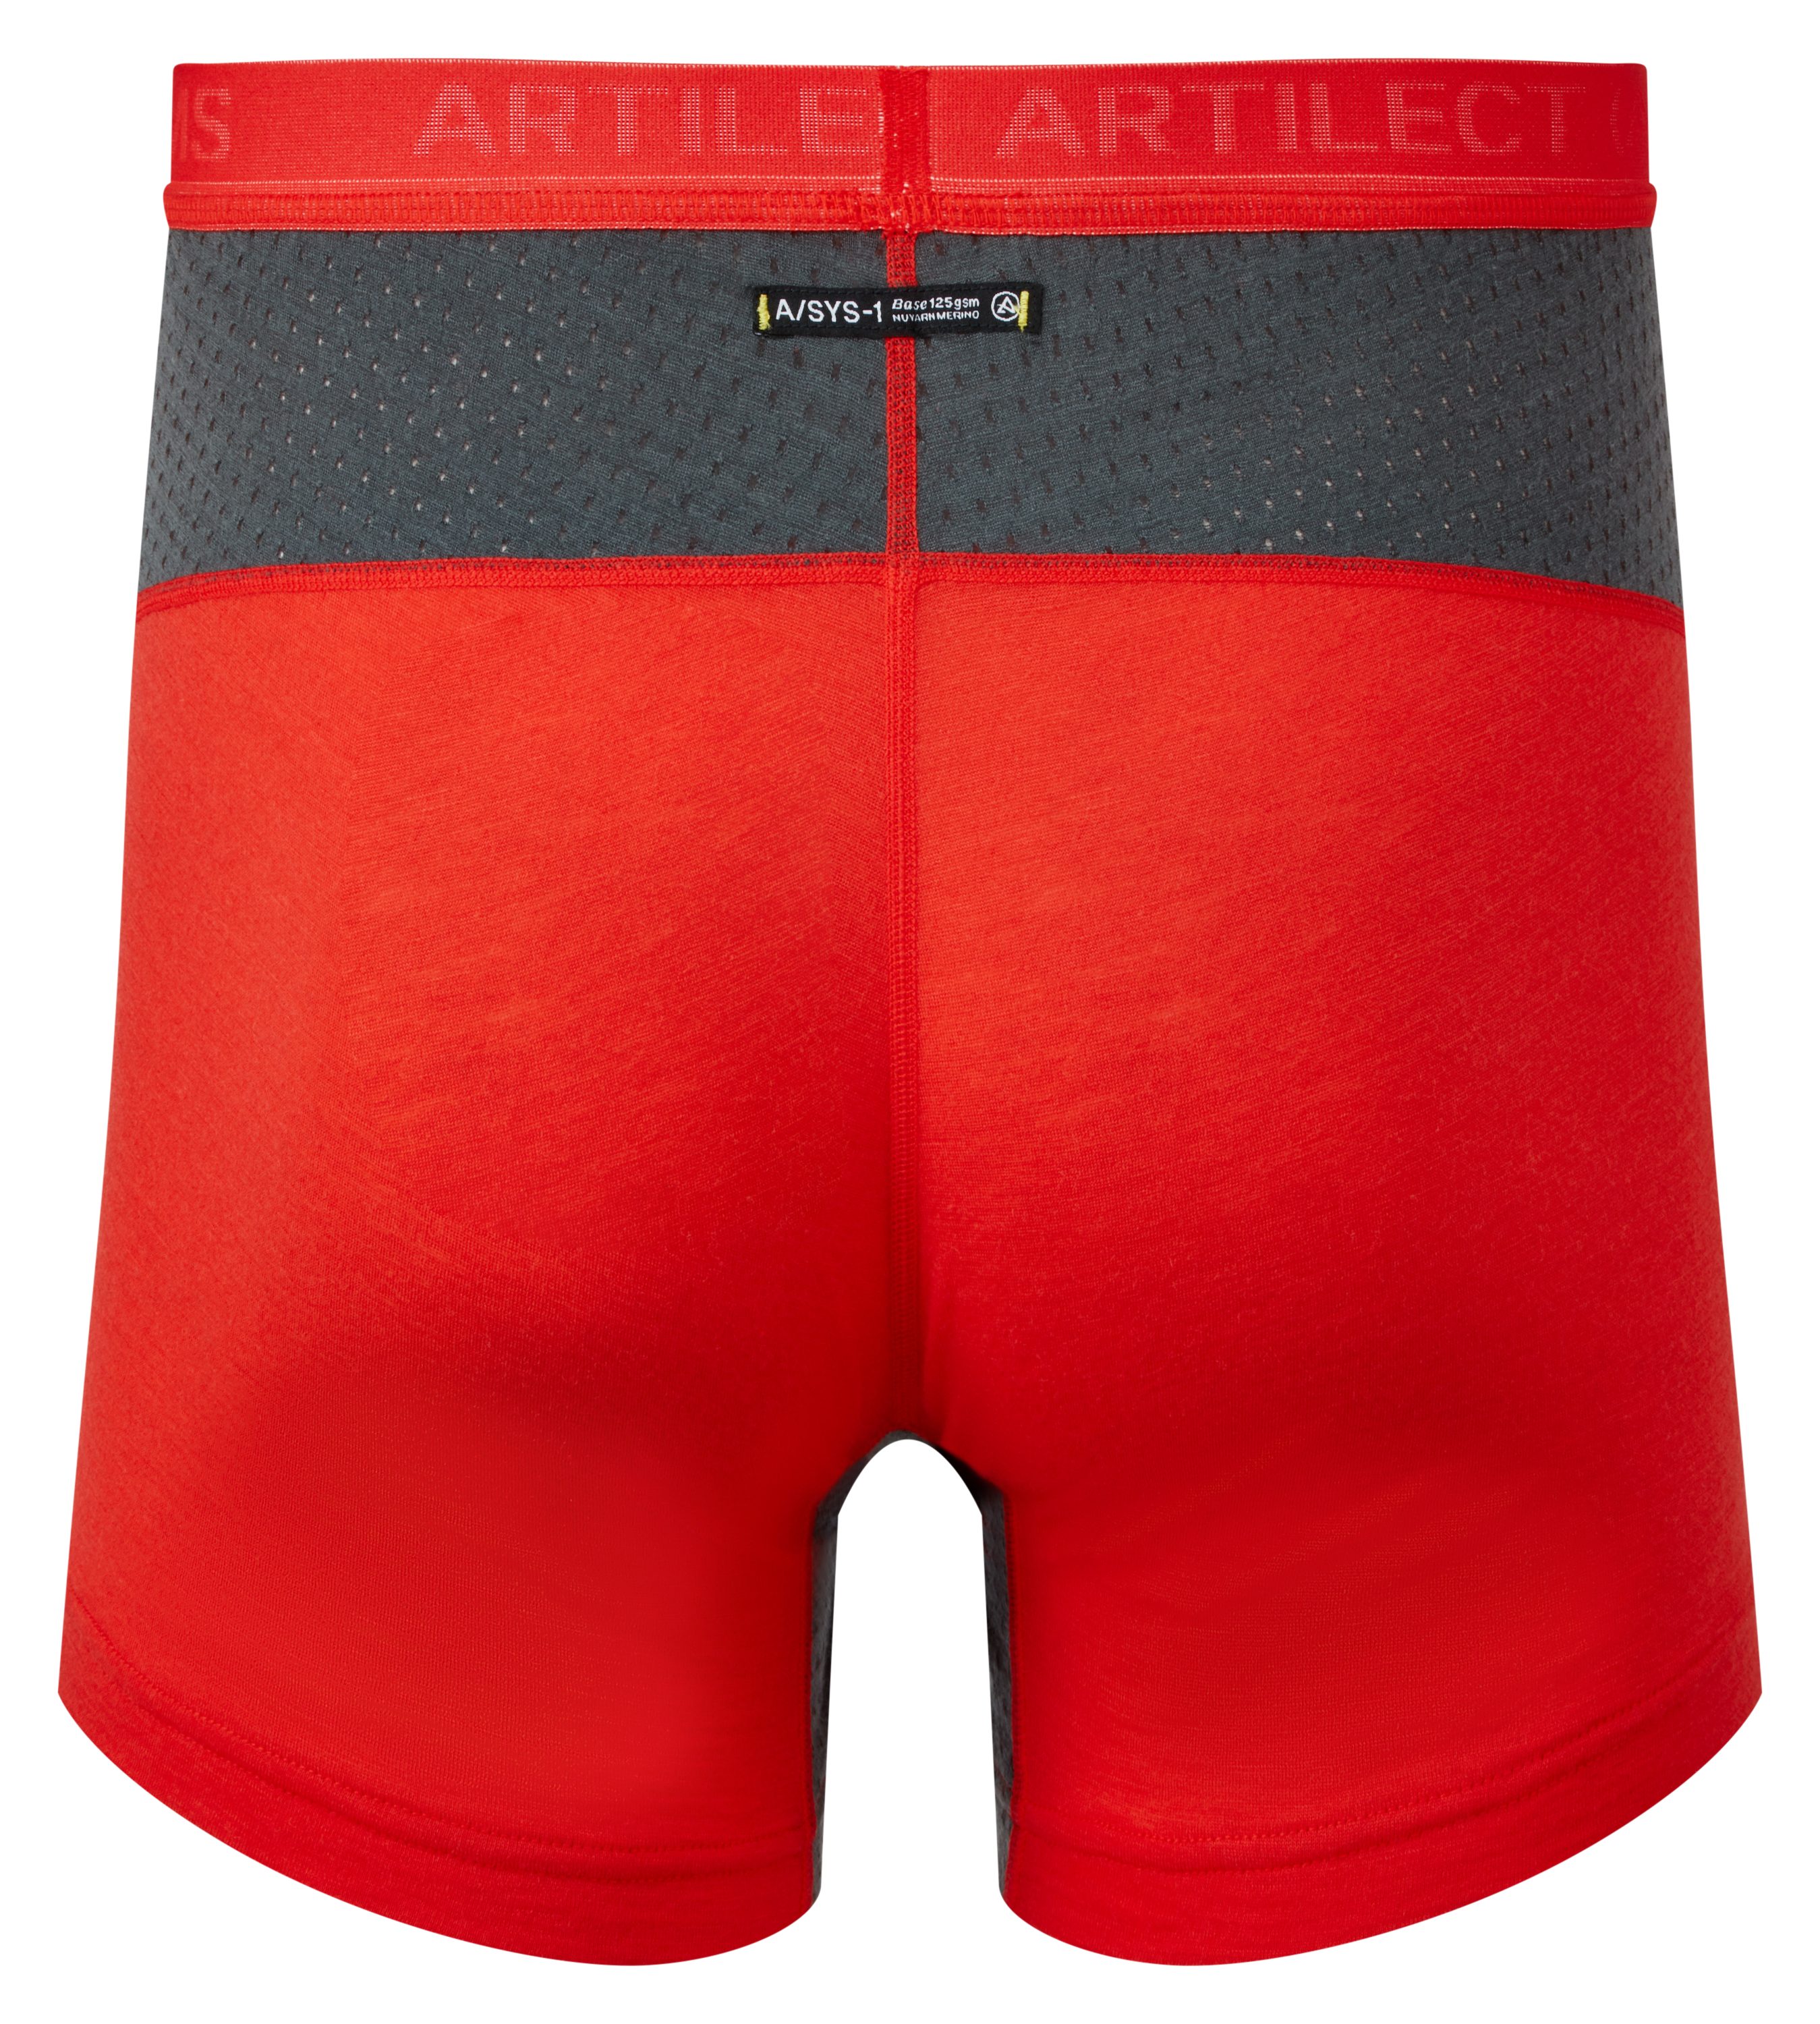 Artilect Boxer Artilect Herren Brief 125 Red/Ash Boulder Boxer Unterhose Super